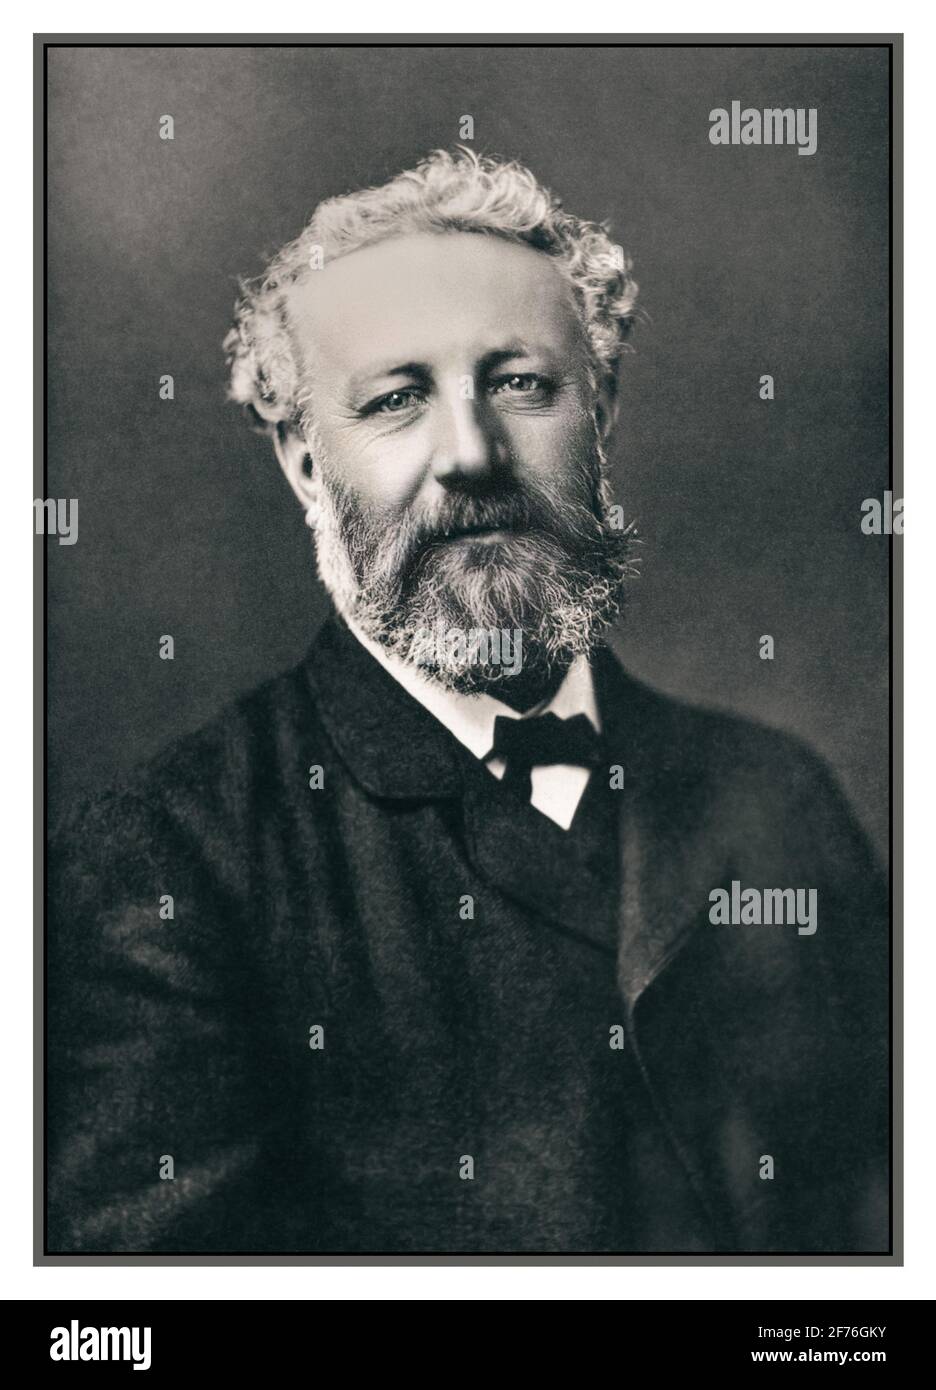 JULES VERNE STUDIO STUDIE evokative Porträt von Jules Verne 1870 Von dem berühmten französischen Fotografen Felix Nadar (1820-1910) Paris France Stockfoto